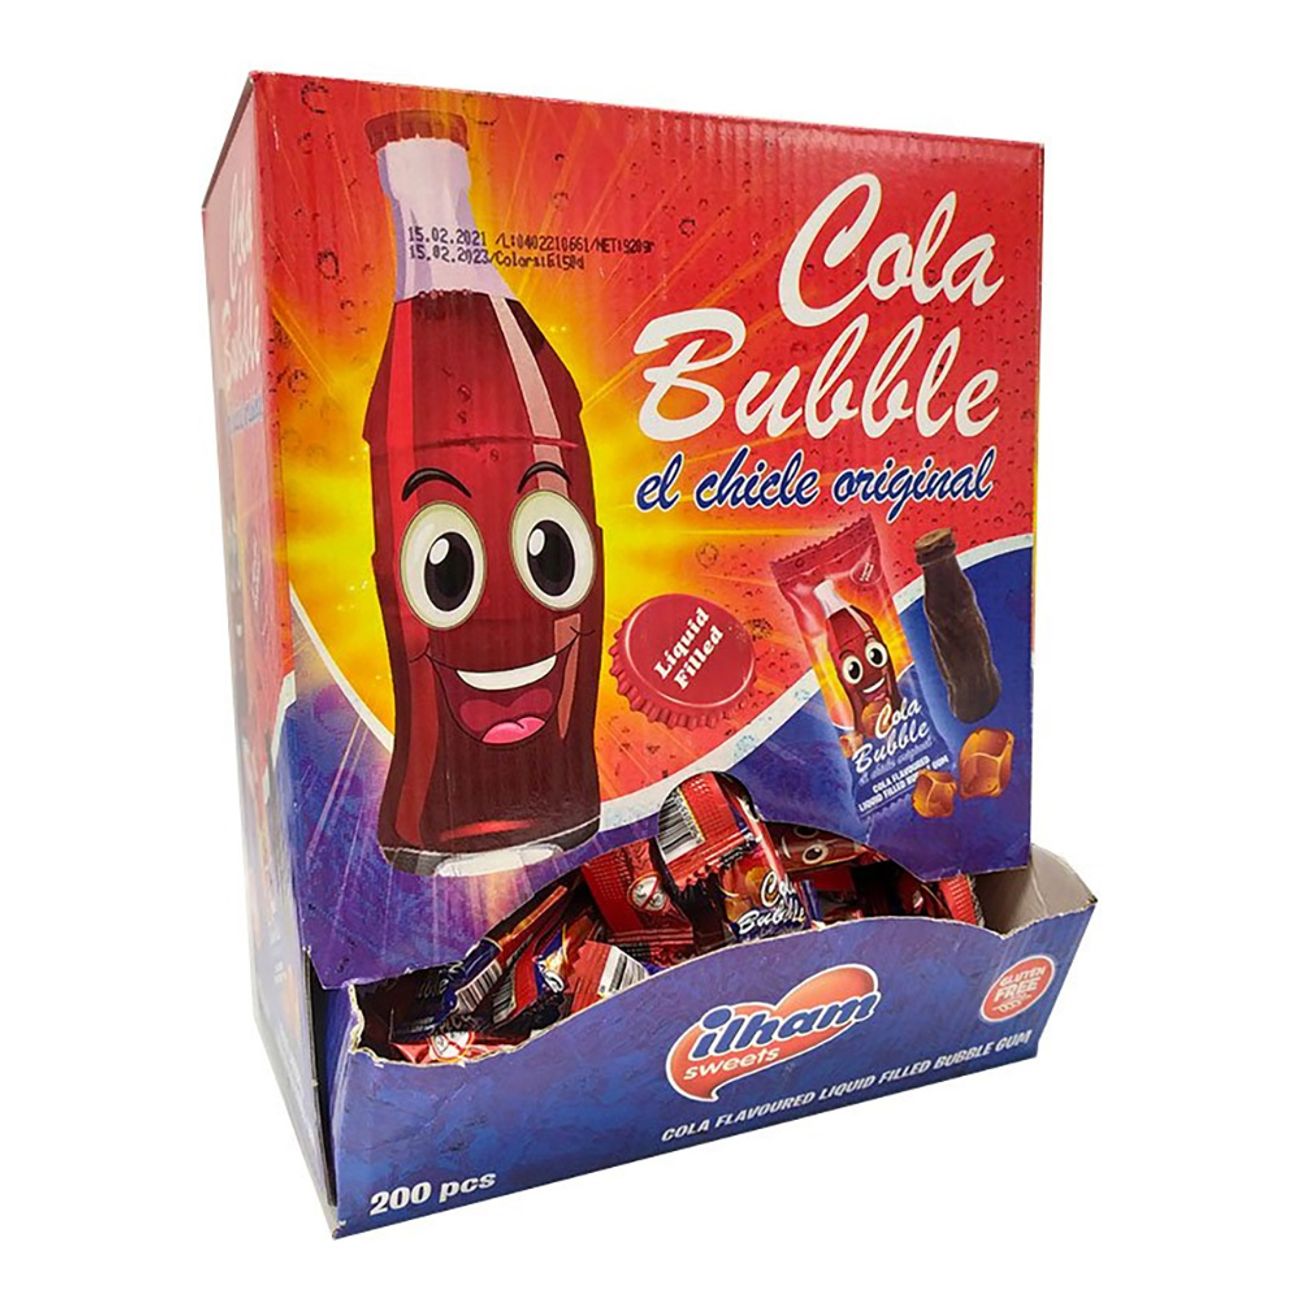 cola-bottle-bubble-gum-72488-3